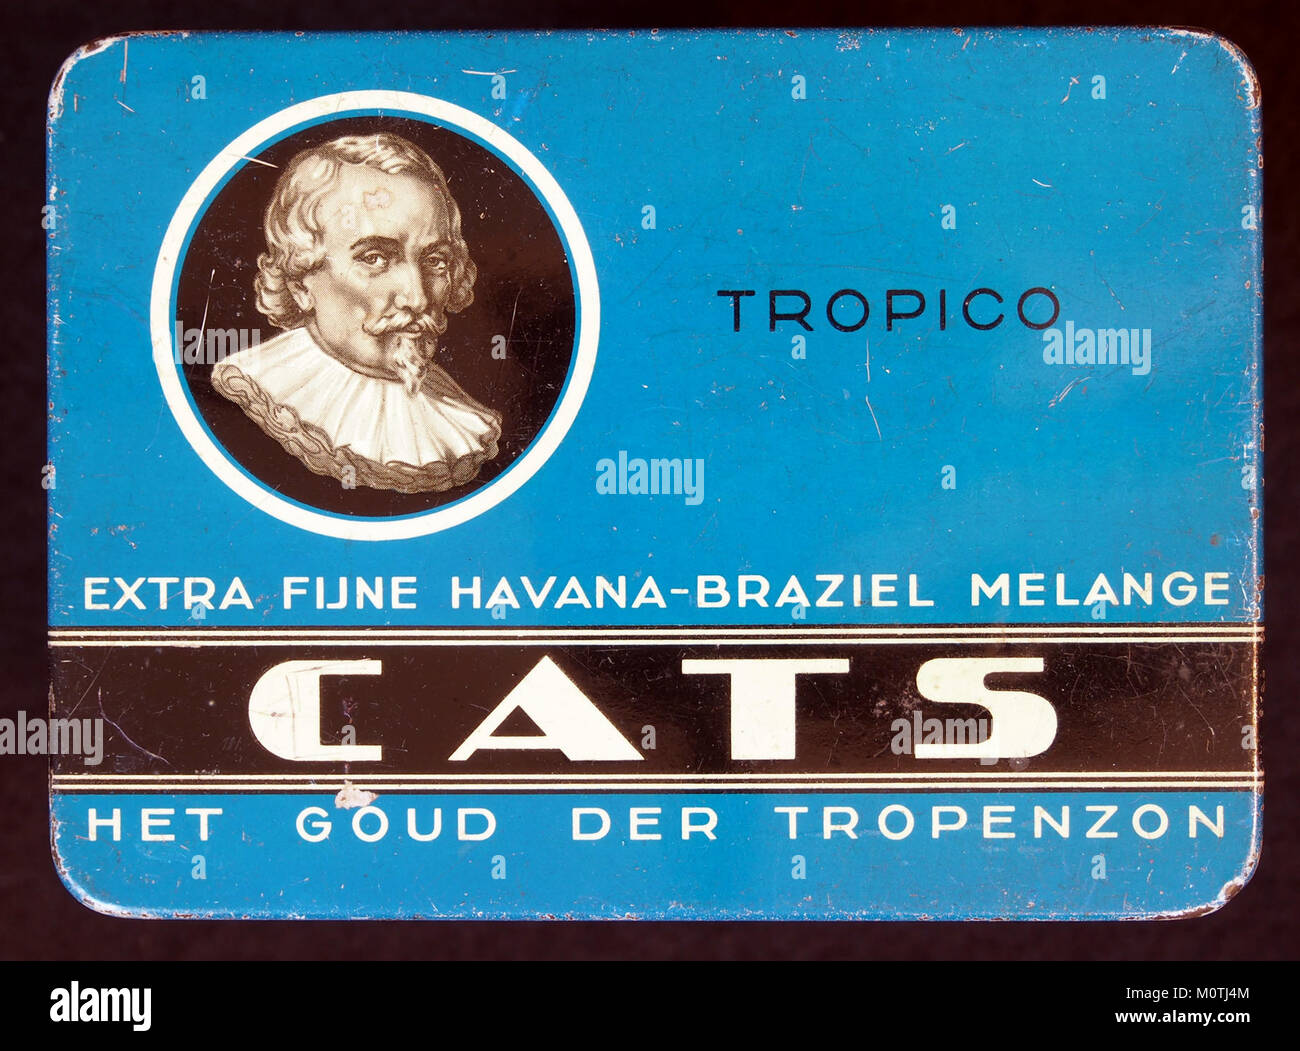 CATS Tropico sigarenblikje Stock Photo